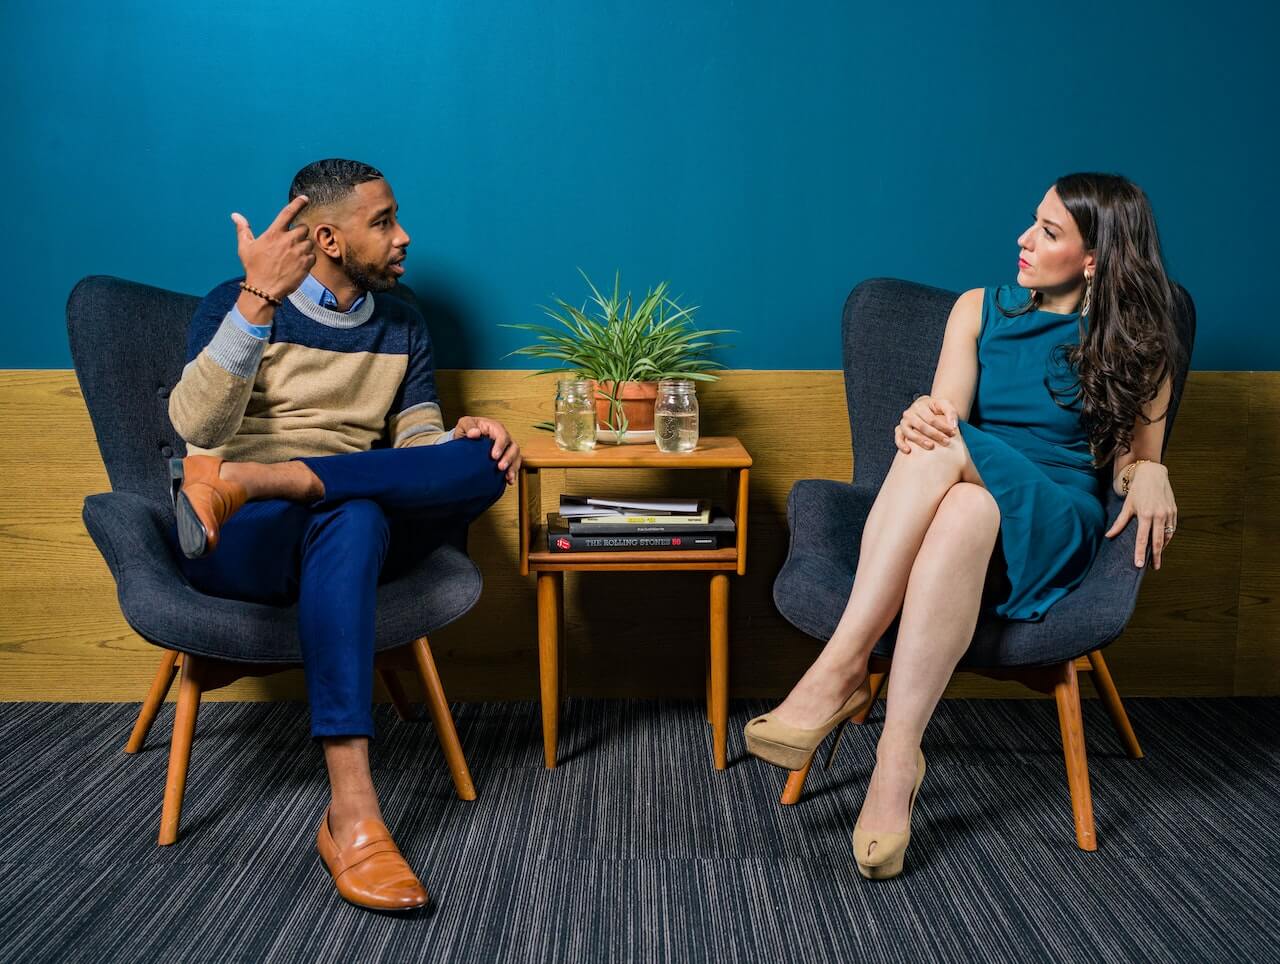 Logopedista mentre discute con un paziente per monitorare l'efficacia della terapia. I due sono seduti su delle poltrone in tessuto in una stanza con pareti blu e legno.